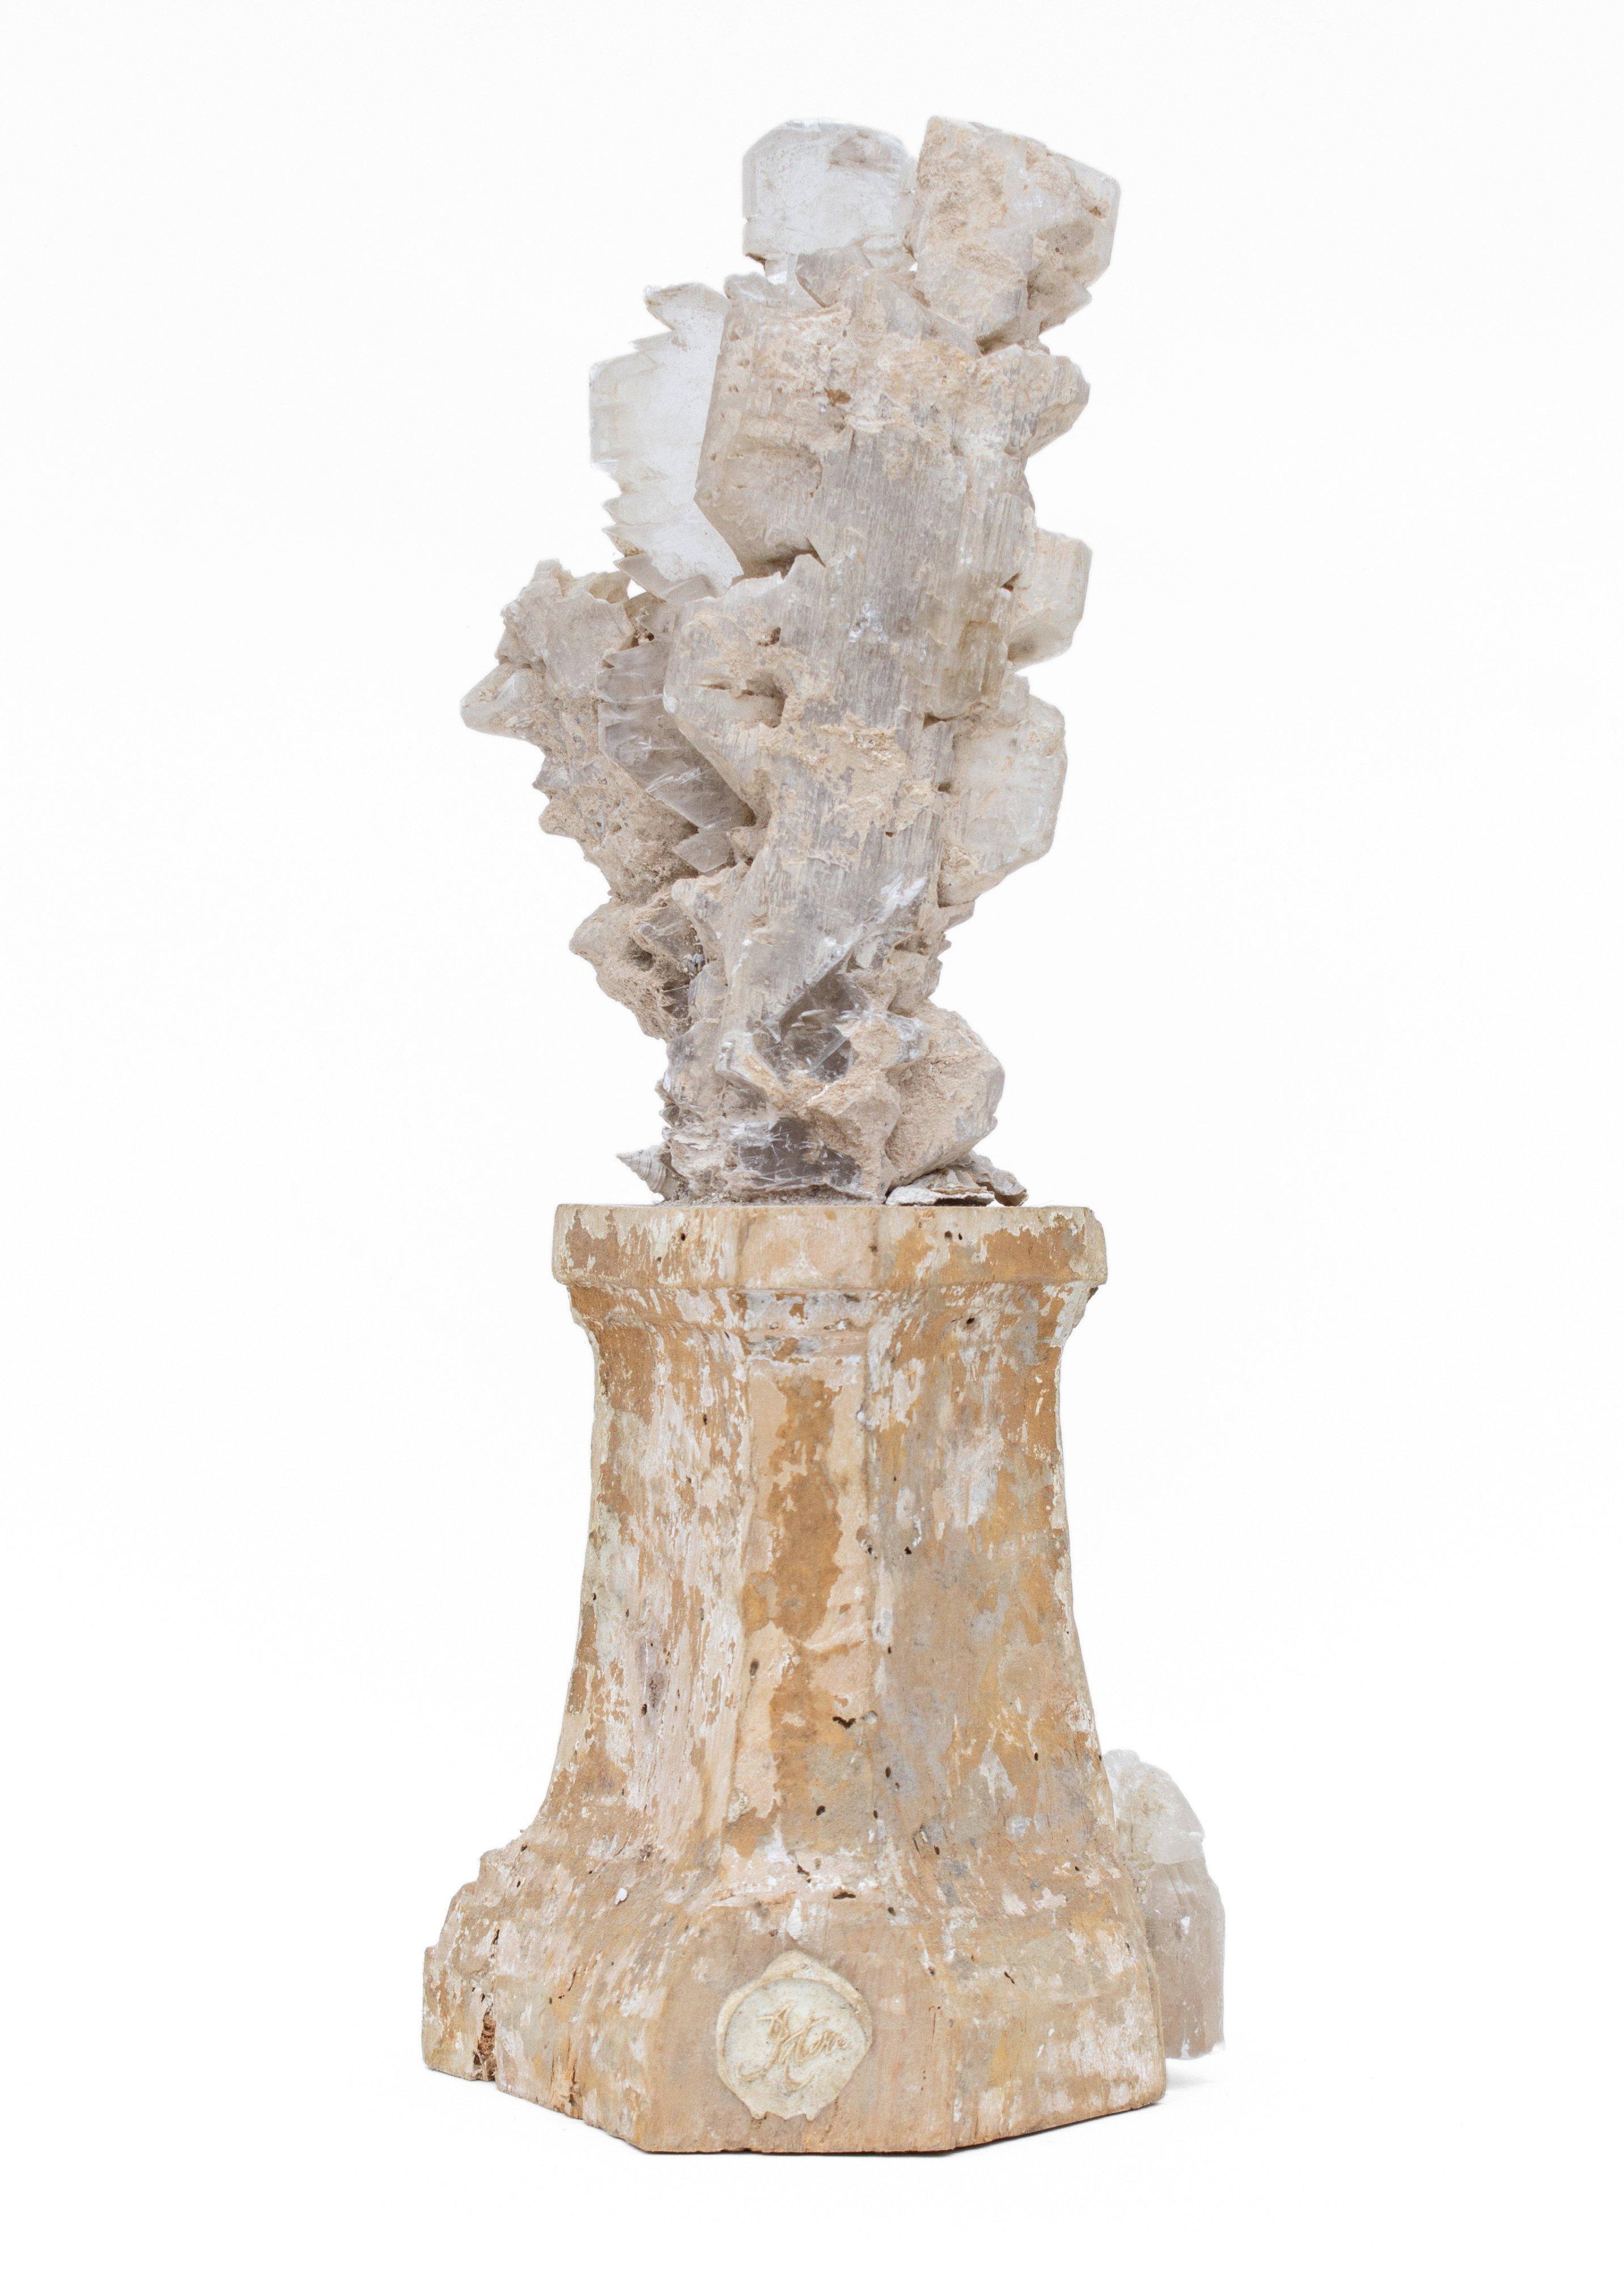 italienischer Leuchtersockel aus dem 17. Jahrhundert, verziert mit einer Selenitklinge und fossilen Muscheln. Dieses Fragment stammt aus einer Kirche in Florenz. Sie wurde 1966 gefunden und vor den berüchtigten Überschwemmungen des Arno gerettet.